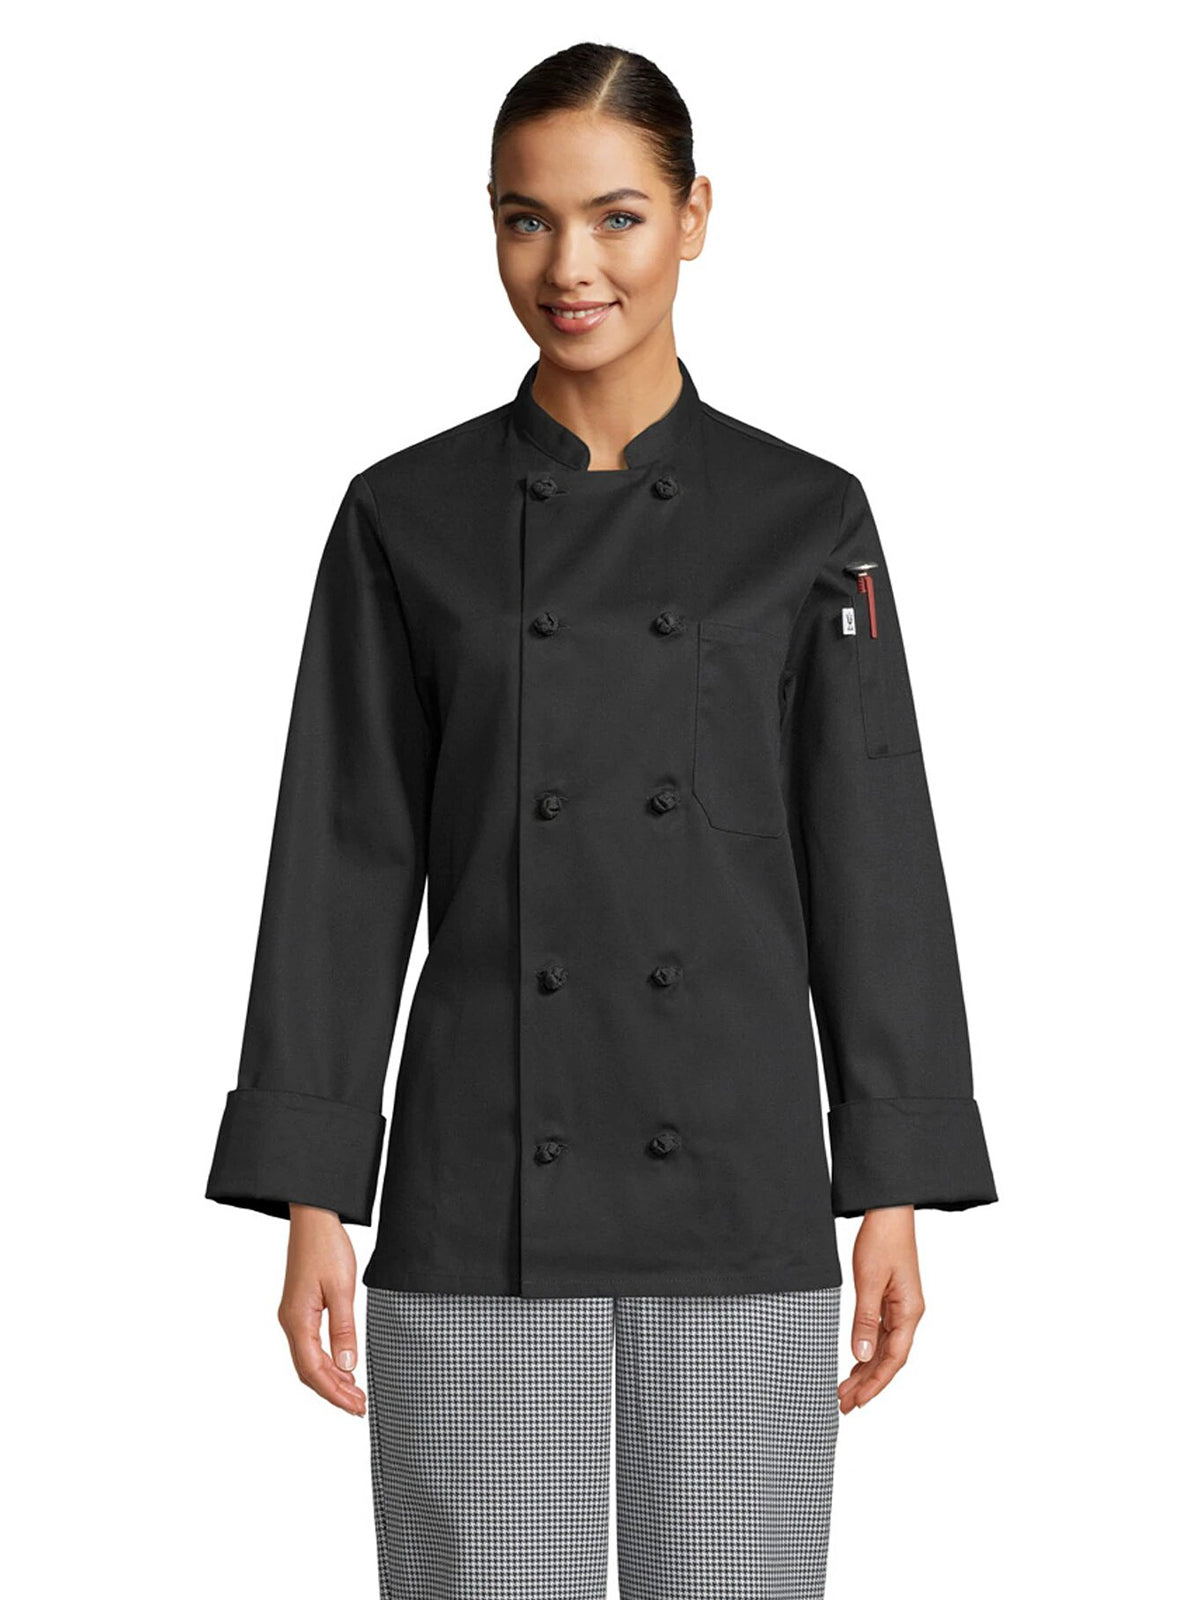 Women's Chef Coat - 0490 - Black